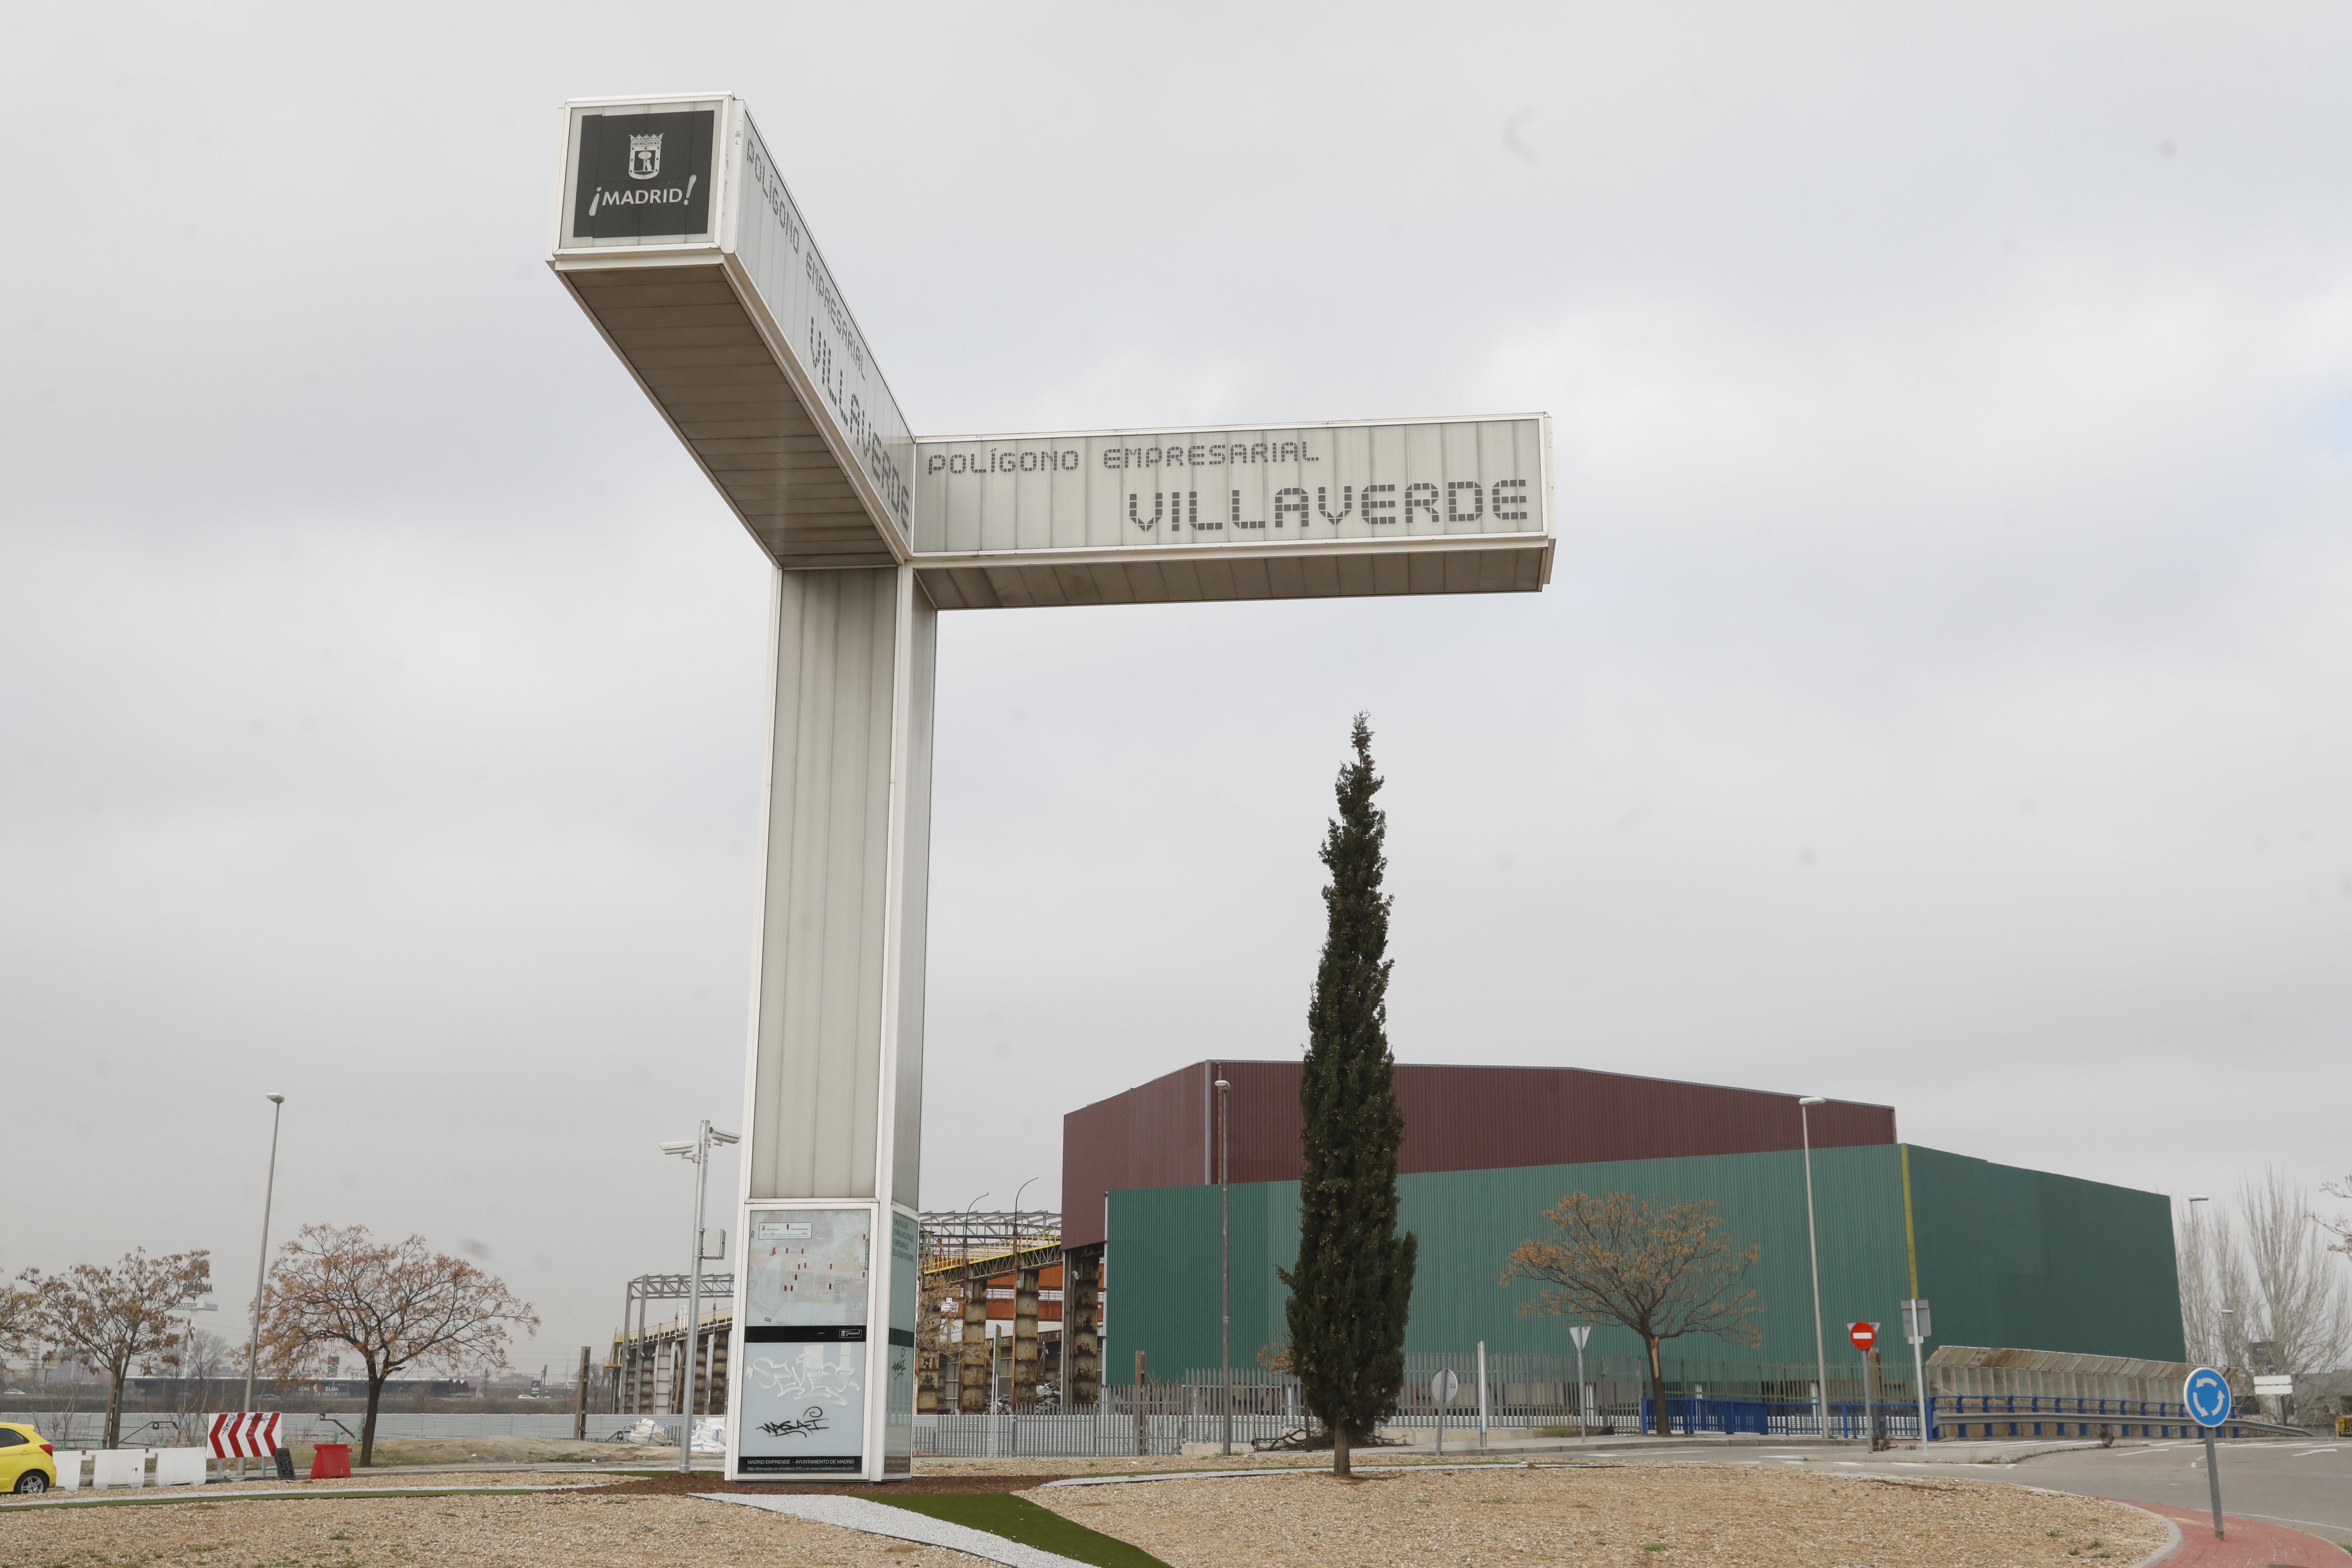 Polígono industrial de Villaverde